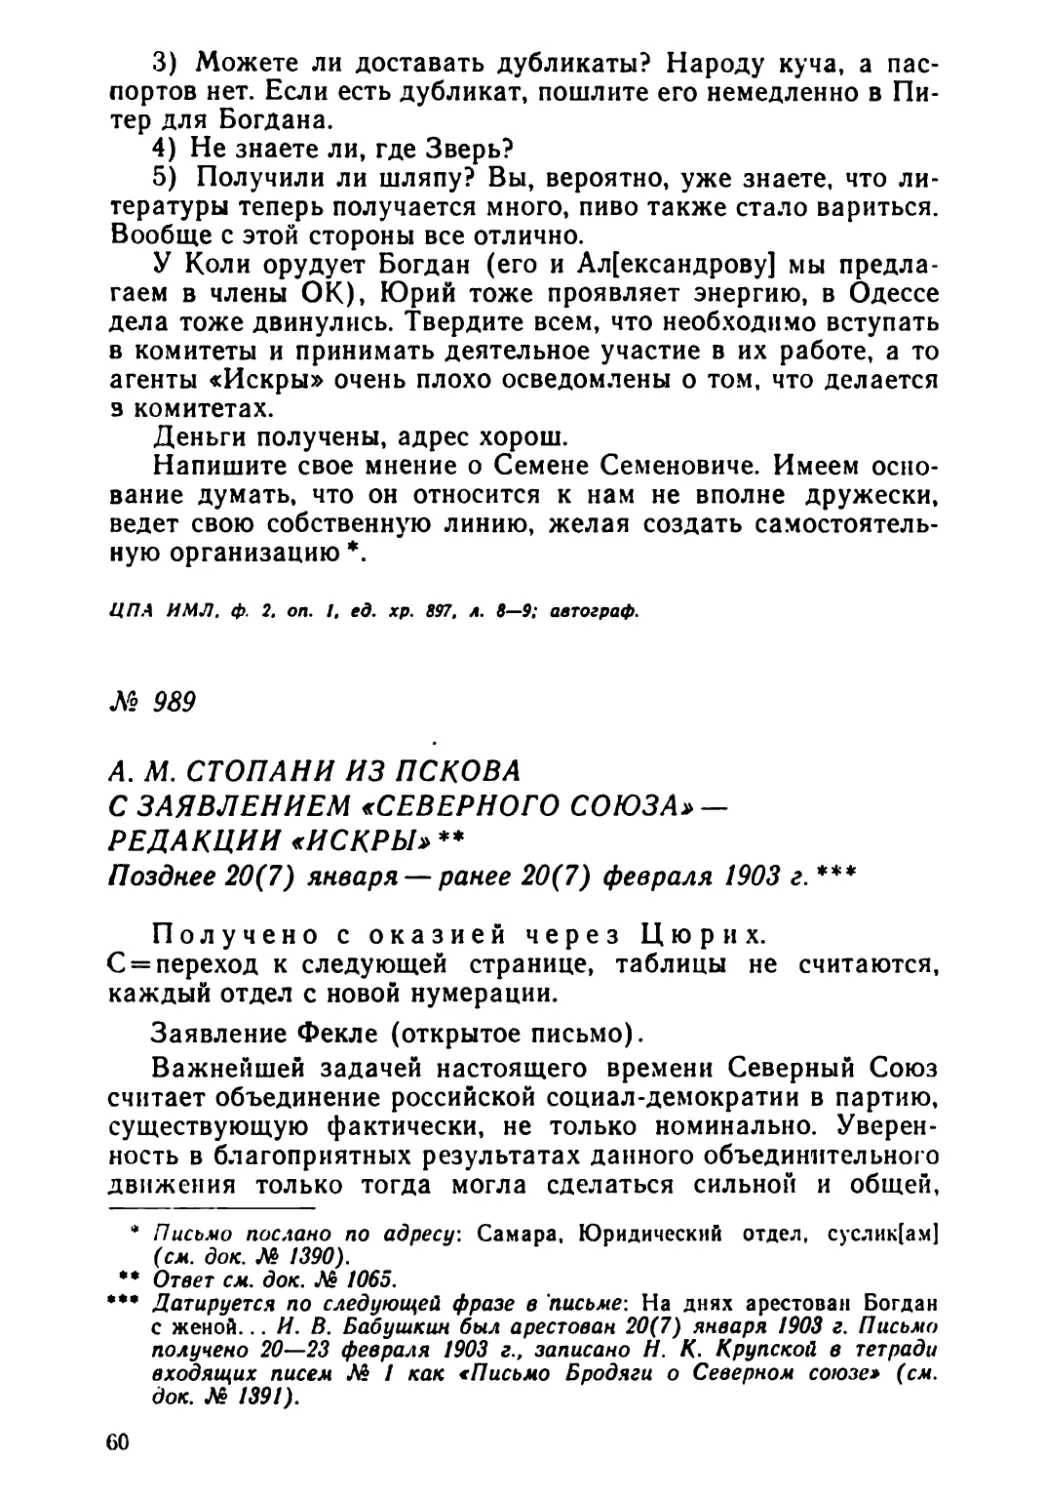 № 989 А. М. Стопани из Пскова с заявлением «Северного союза» — редакции «Искры». Позднее 20 января — ранее 20 февраля